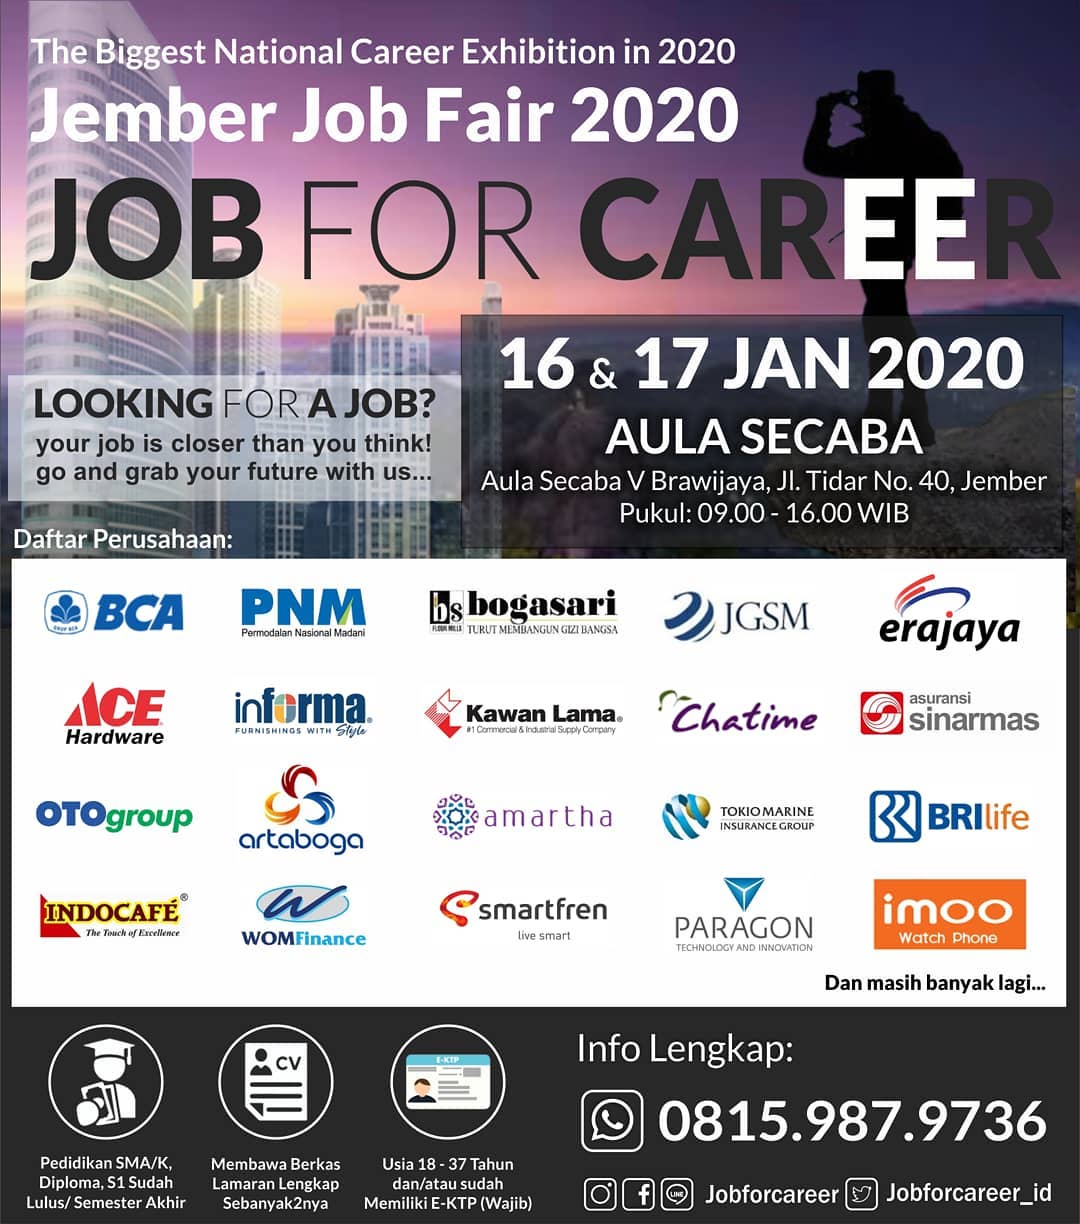 Jember Job Fair â€œJOB FOR CAREERâ€